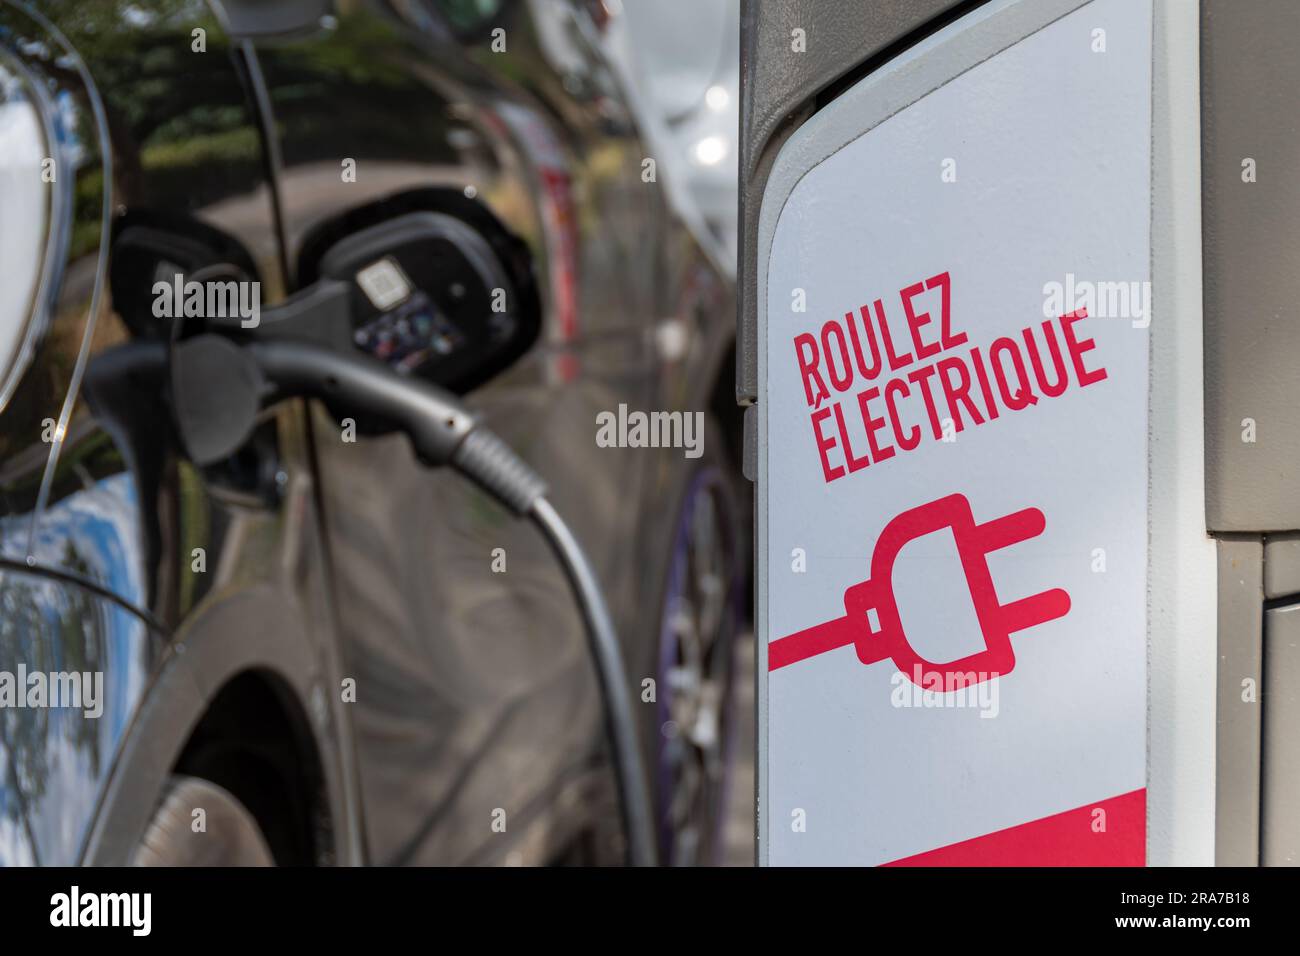 Borne de recharge pour voitures électriques appartenant au réseau Sigeif (Syndicat Intercommunal de gaz et d'électricité en Ile-de-France) Banque D'Images